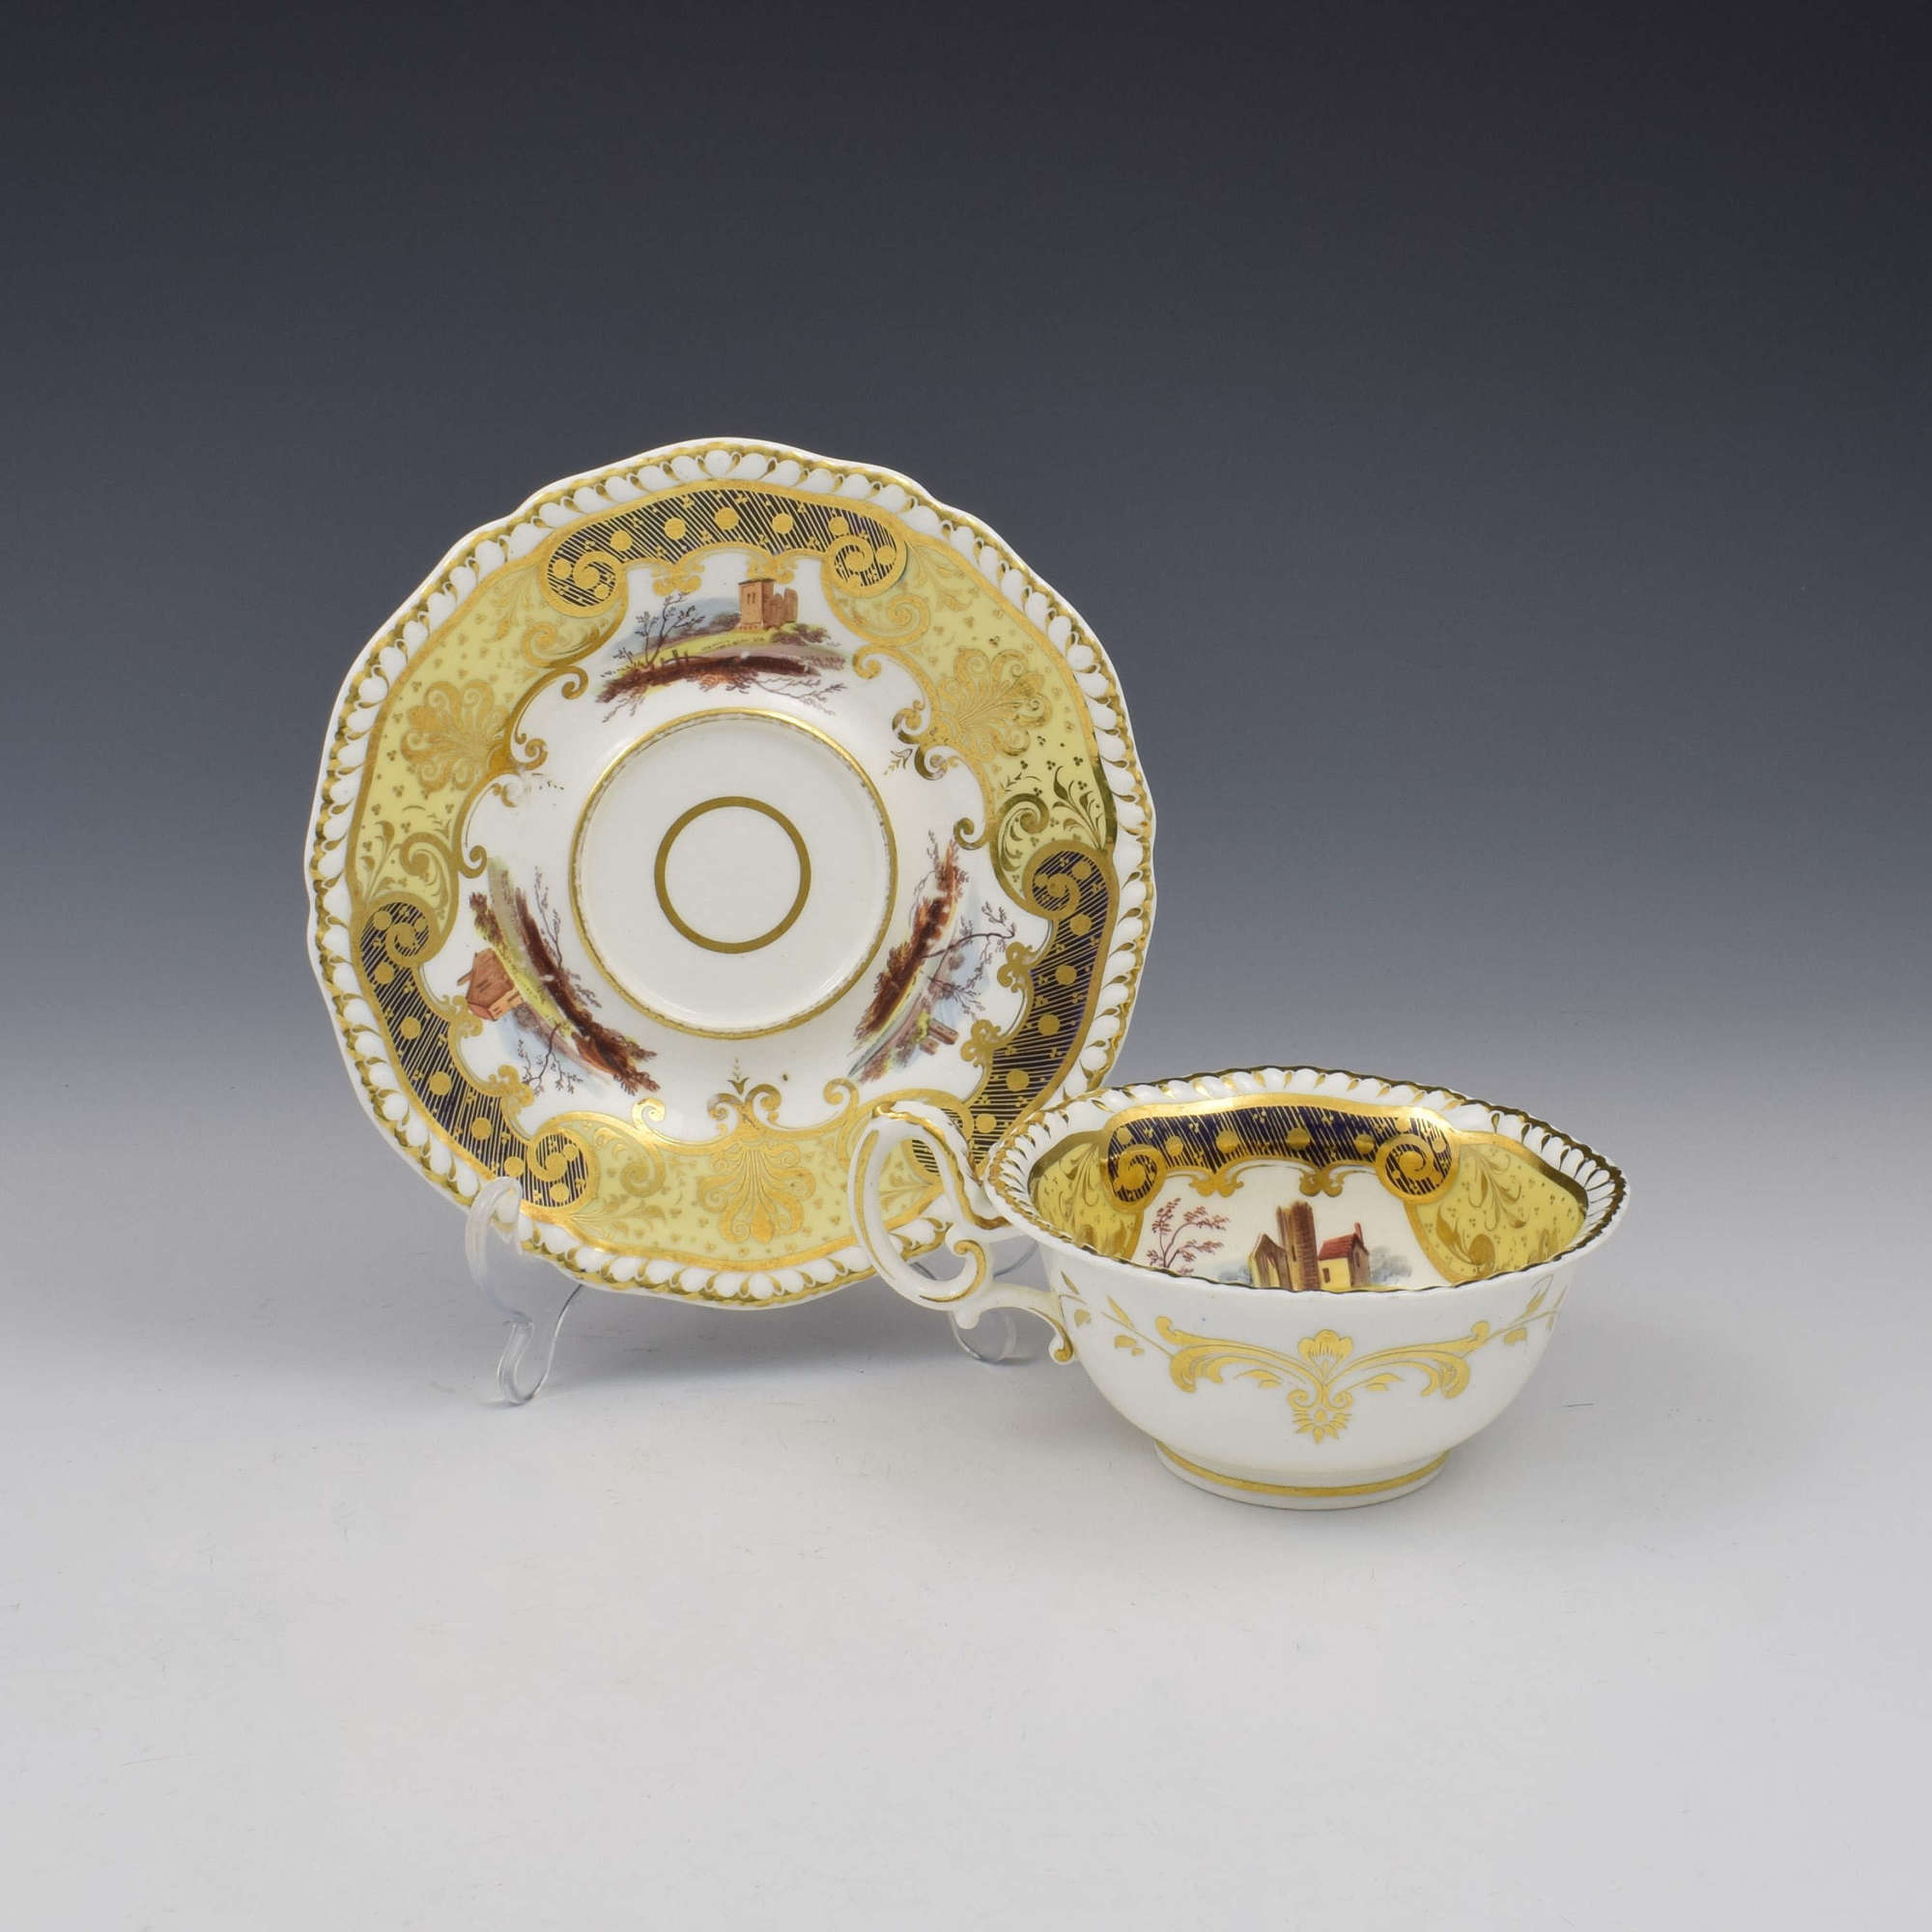 H & R Daniel Porcelain Tea Cup & Saucer Pattern 4111 c.1825